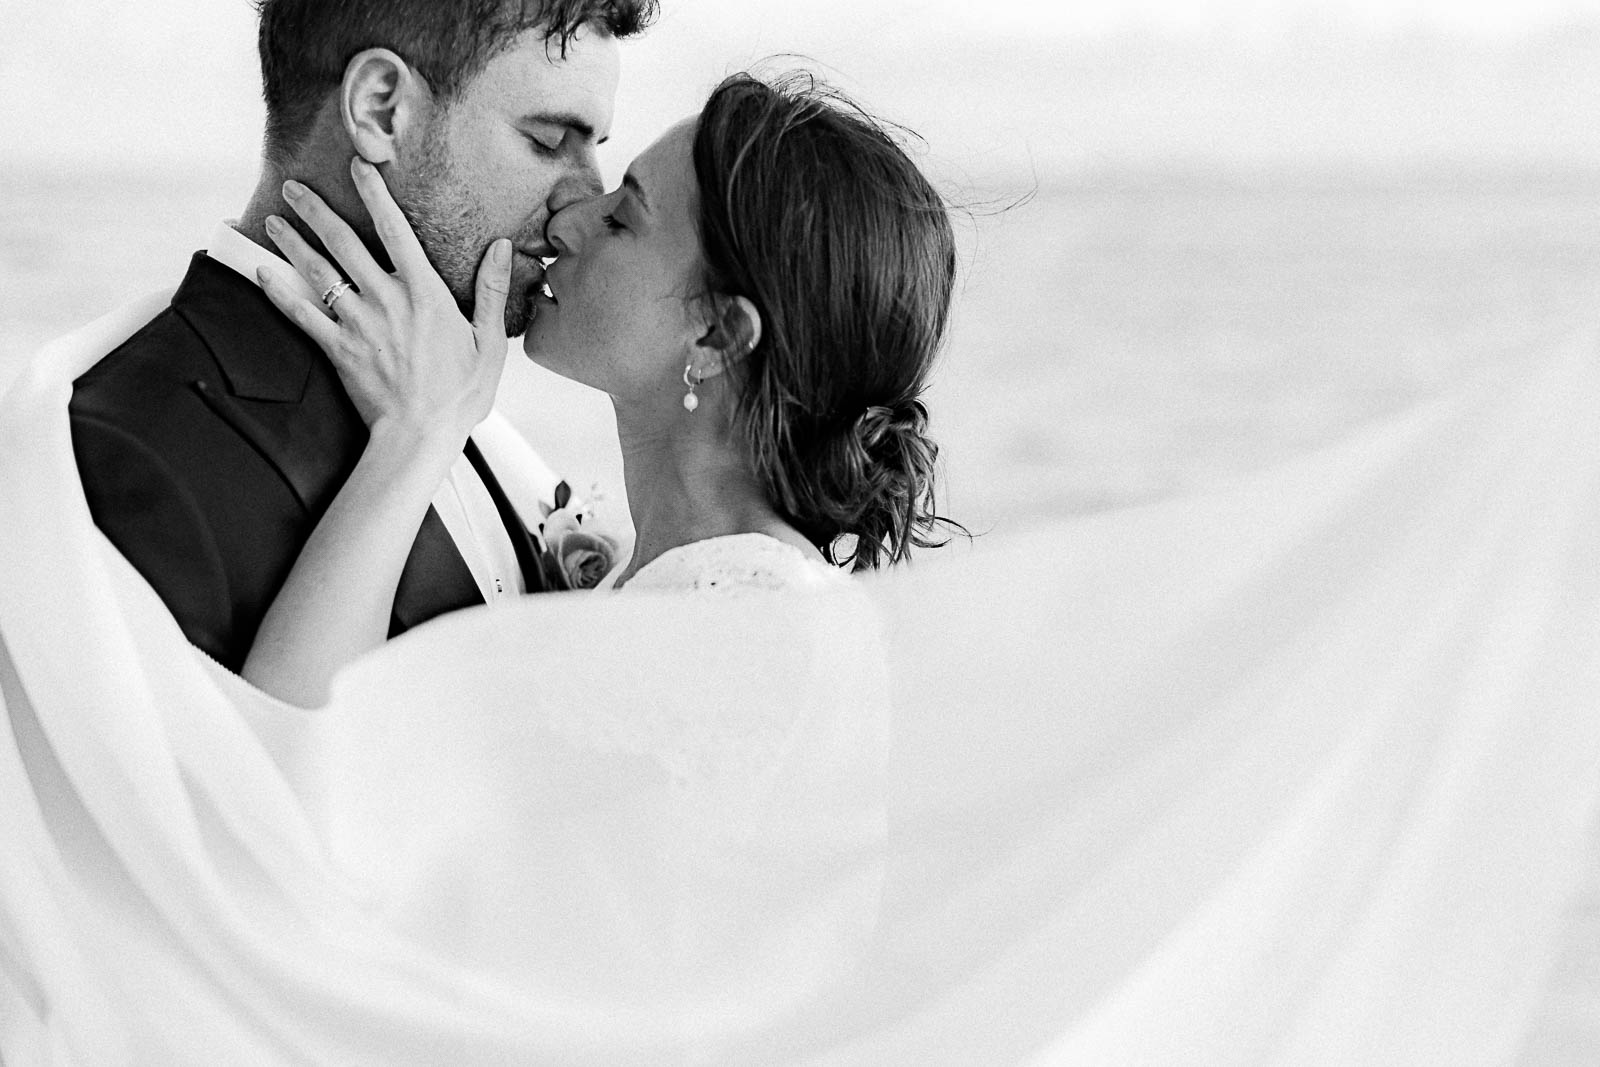 Photographie en noir et blanc de Mathieu Dété, photographe de mariage à Saint-Leu sur l'île de la Réunion 974, présentant un couple de mariés qui s'embrasse, avec le voile de la mariée au premier plan